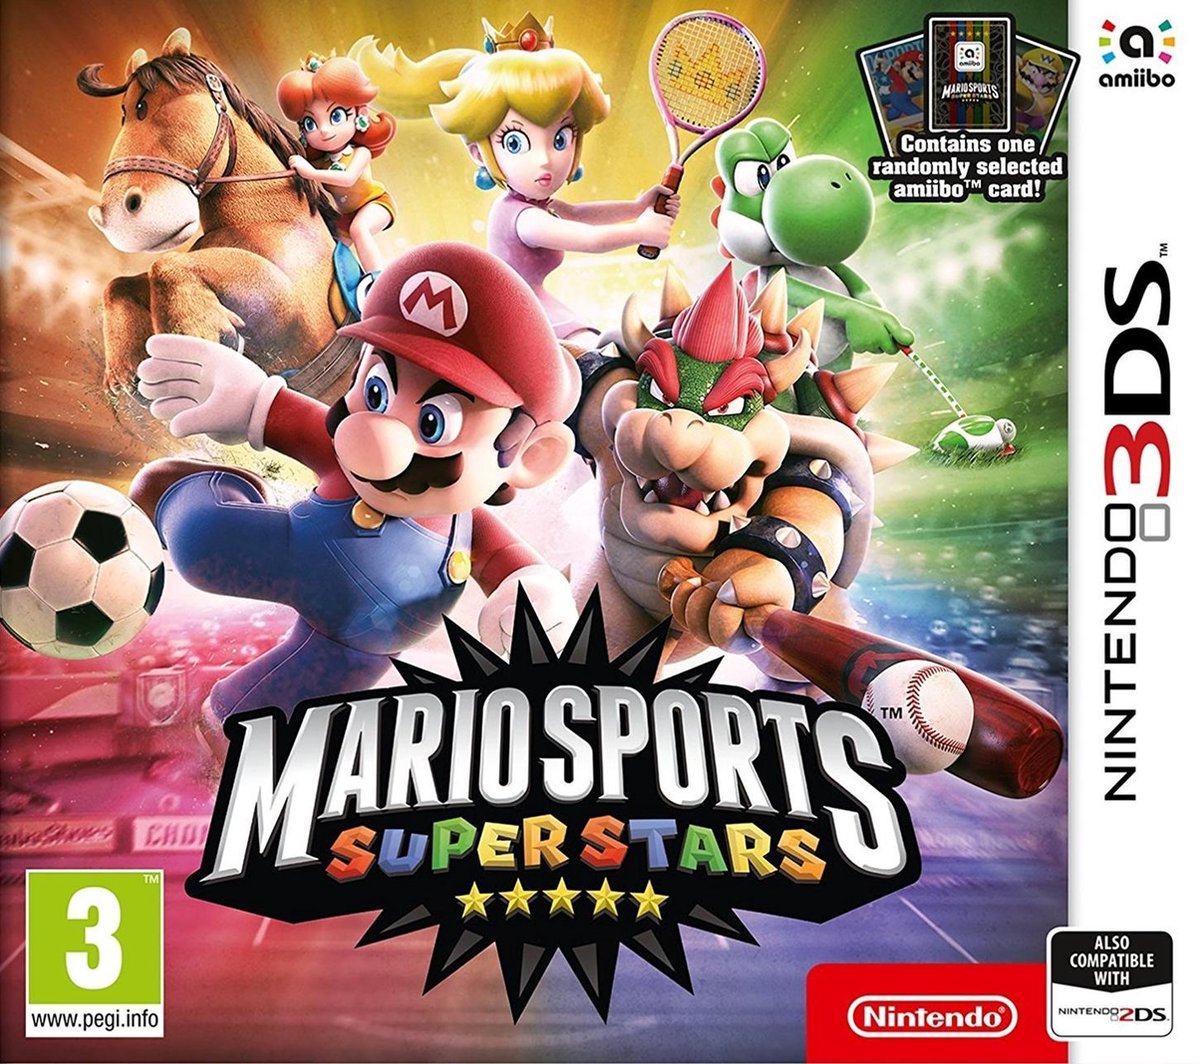 Bon plan gaming : -37% sur le jeu Mario Party Superstars chez